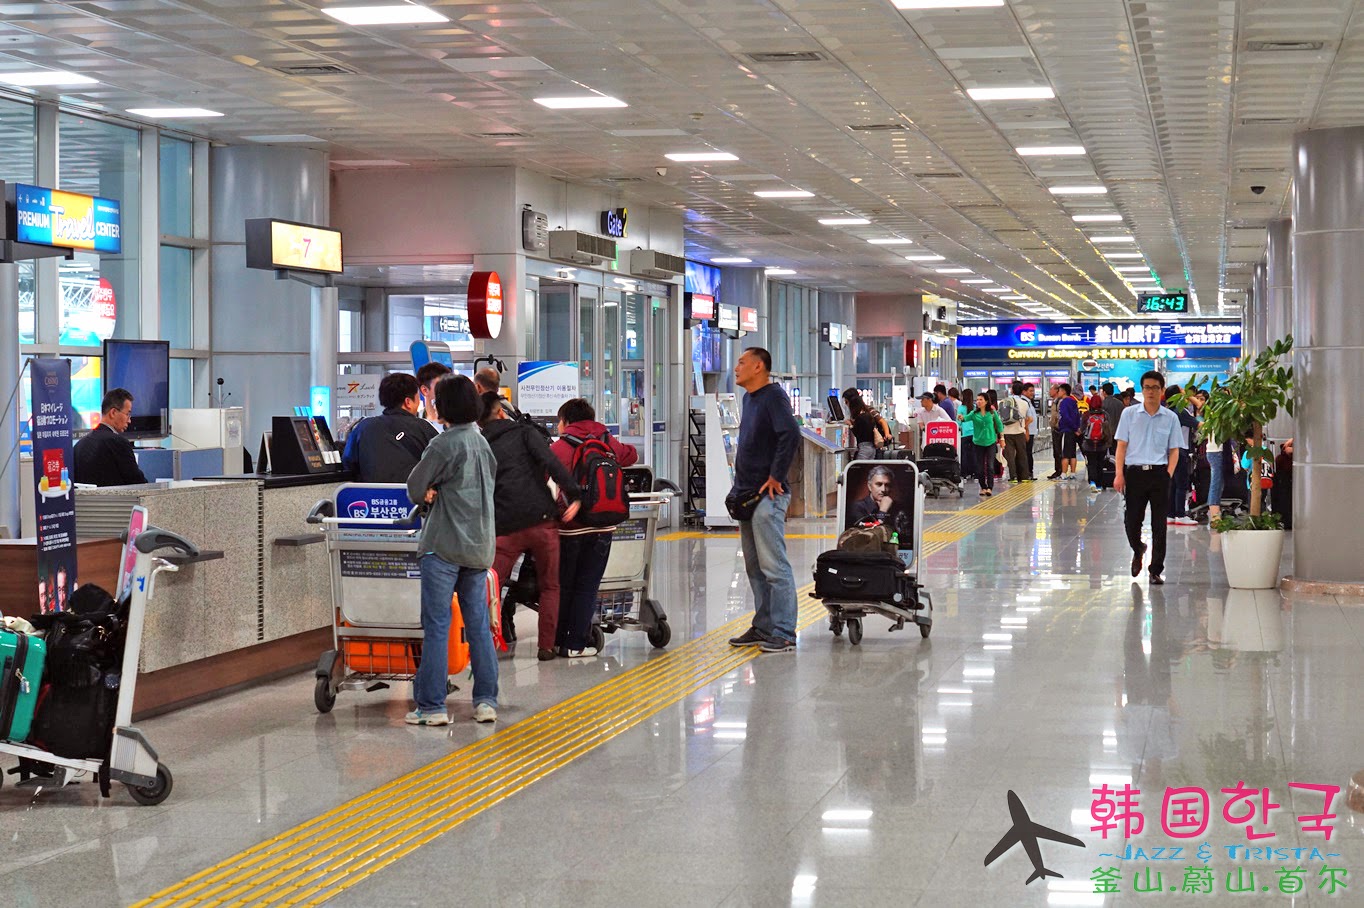 【韩国游记】金海国际机场 Gim Hae Airport | 釜山 |食在好玩 - 美食旅游部落格 Food & Travel Blog